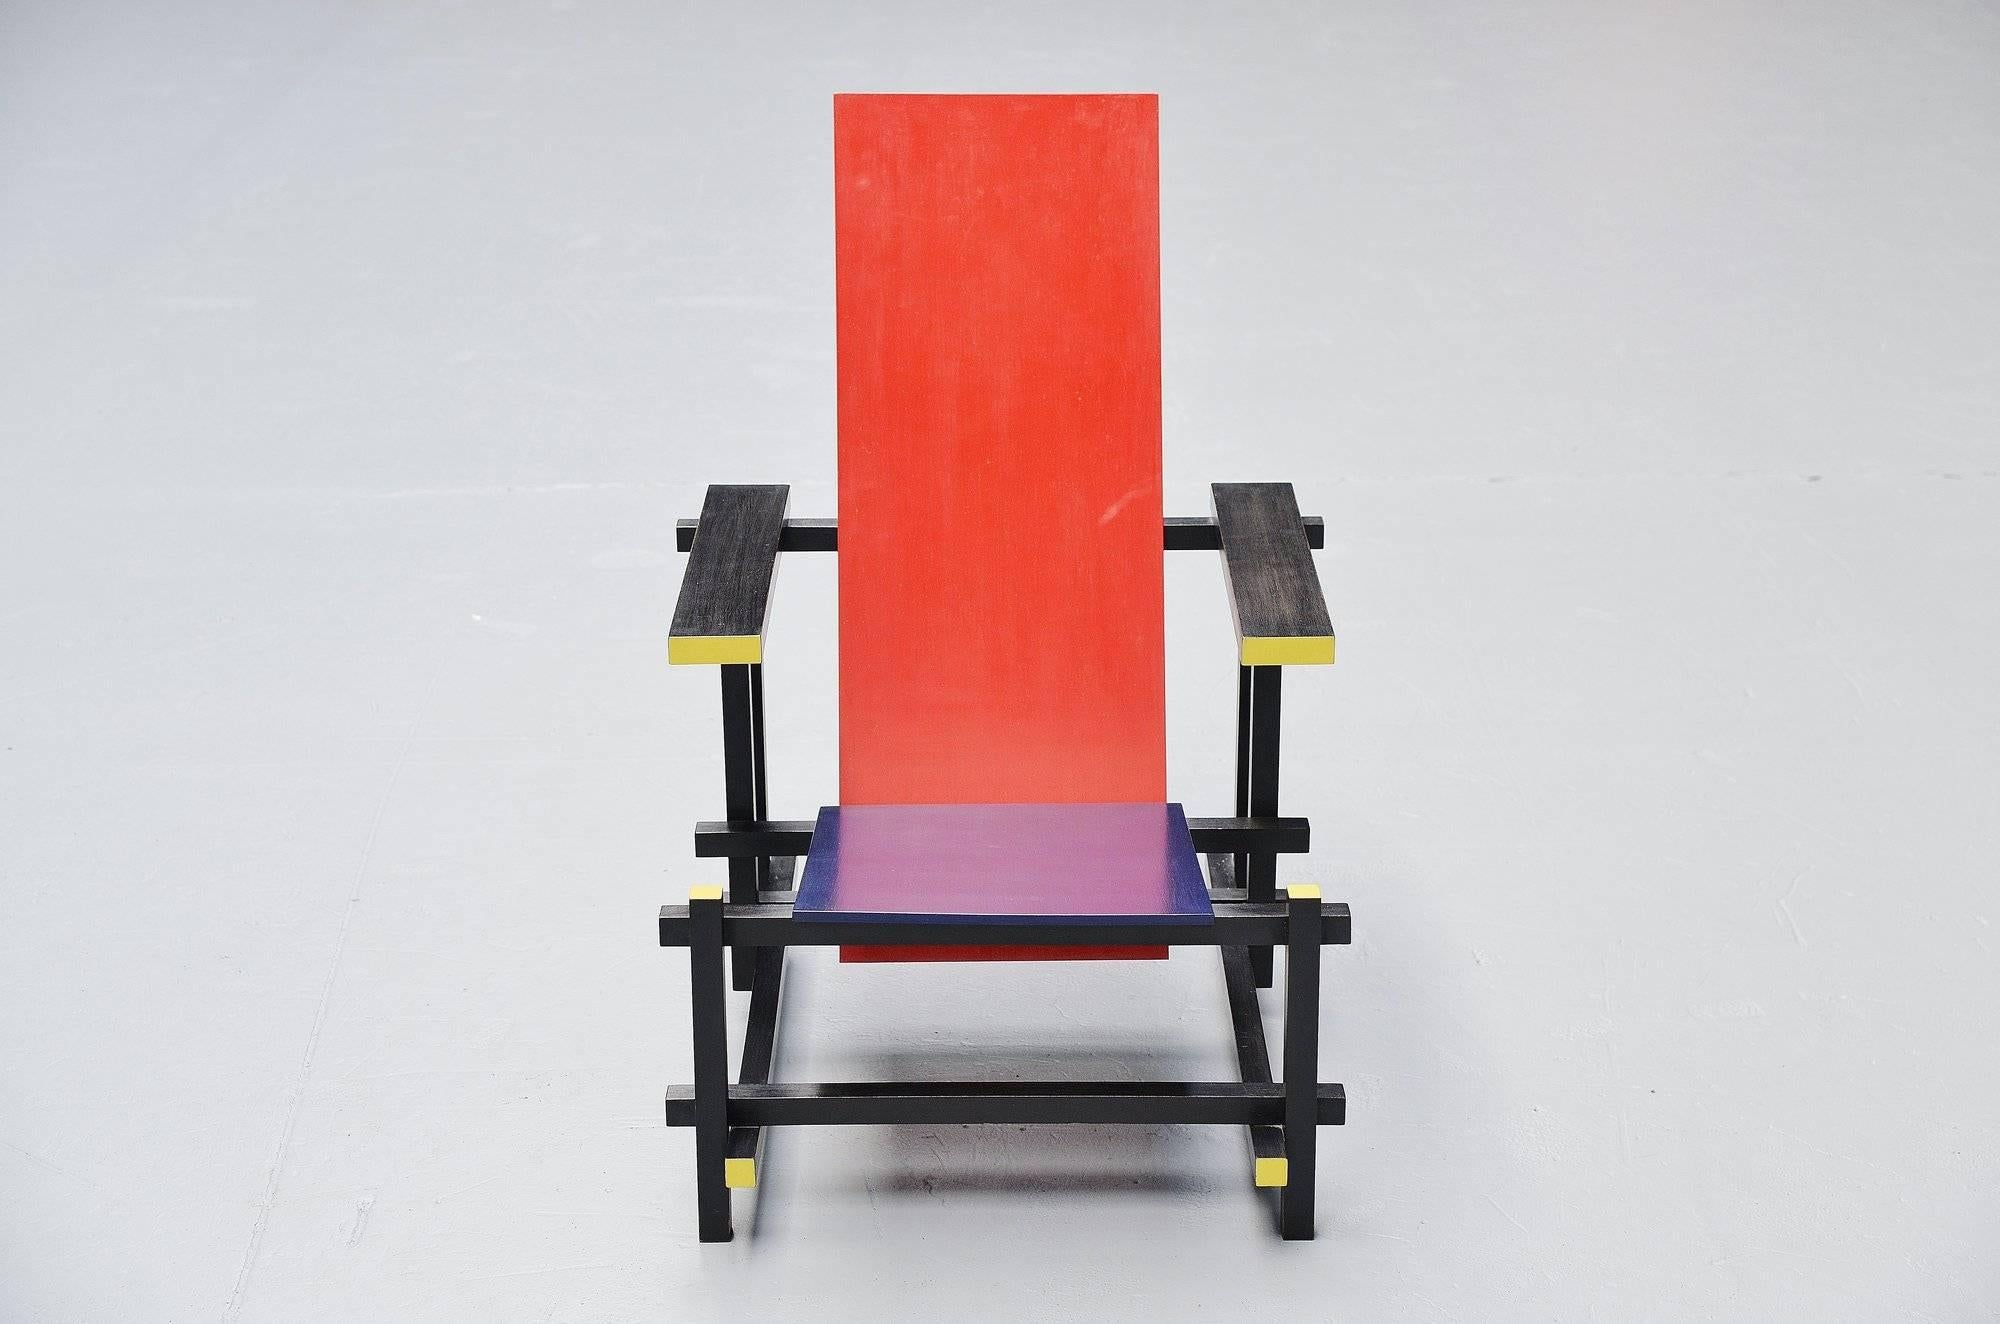 Hand-Painted Gerrit Thomas Rietveld Red Blue Chair Gerard van de Groenekan, 1966